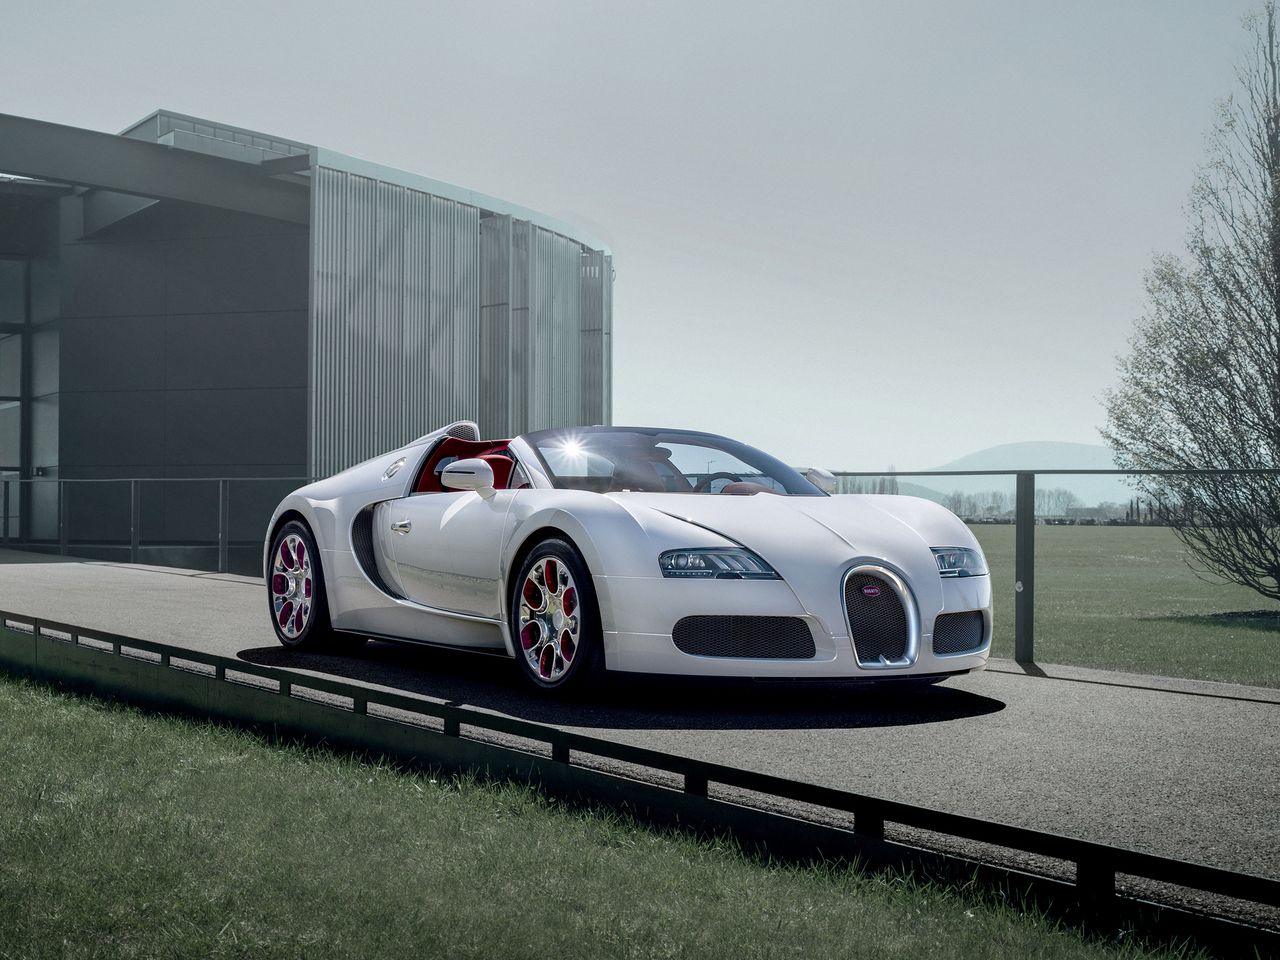 Bugatti Veyron Wei Long powstał w 2012 roku z okazji roku smoka rozpoczynającego się ówcześnie w Chinach. Białe nadwozie skrywa soczyste czerwone wnętrze z dodatkami z porcelany wykonanymi przez Königliche Porzellan-Manufaktur.